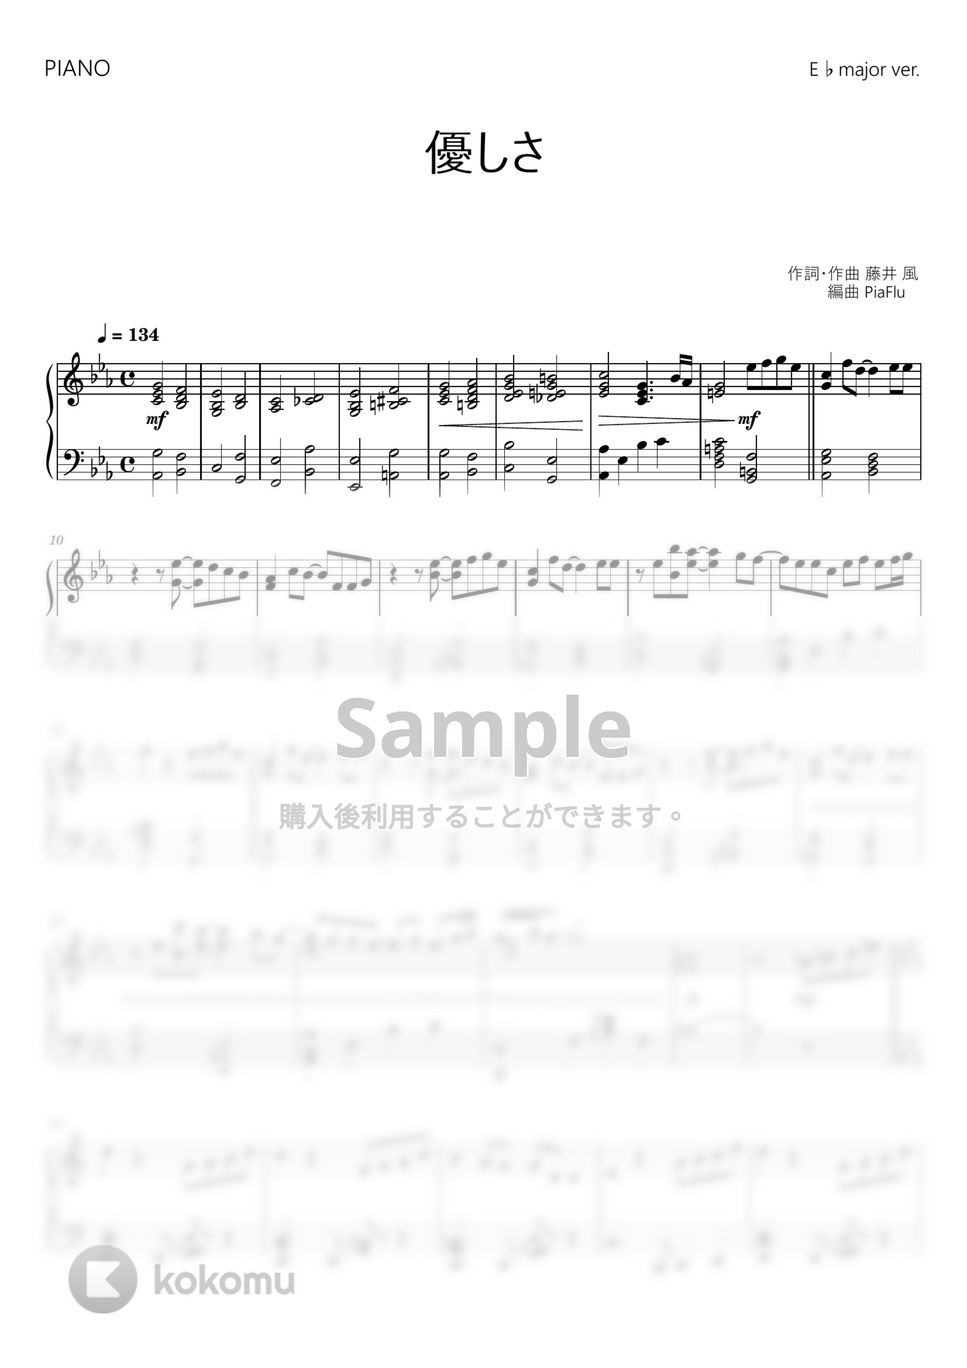 藤井風 - 優しさ (ピアノ / E♭メジャーver.) by PiaFlu